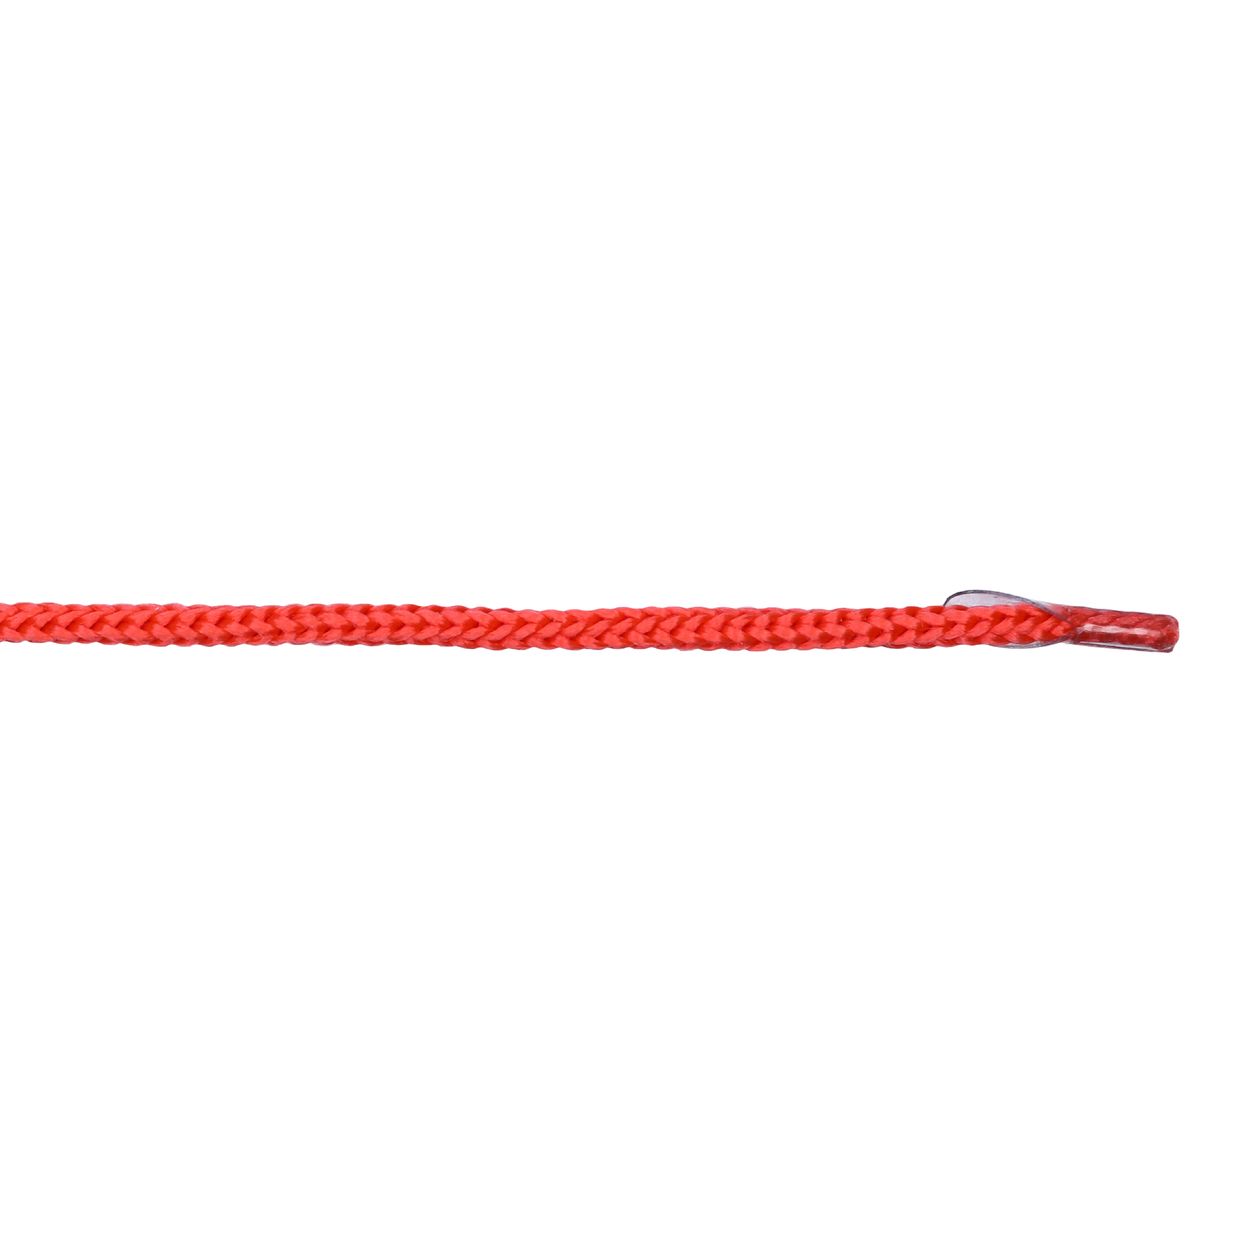 Шнурок для пакетов с крючком арт. 4В511 п/п, диам. 4 мм, дл. 35 см, № 256 ДС красный (уп. 50 пар)